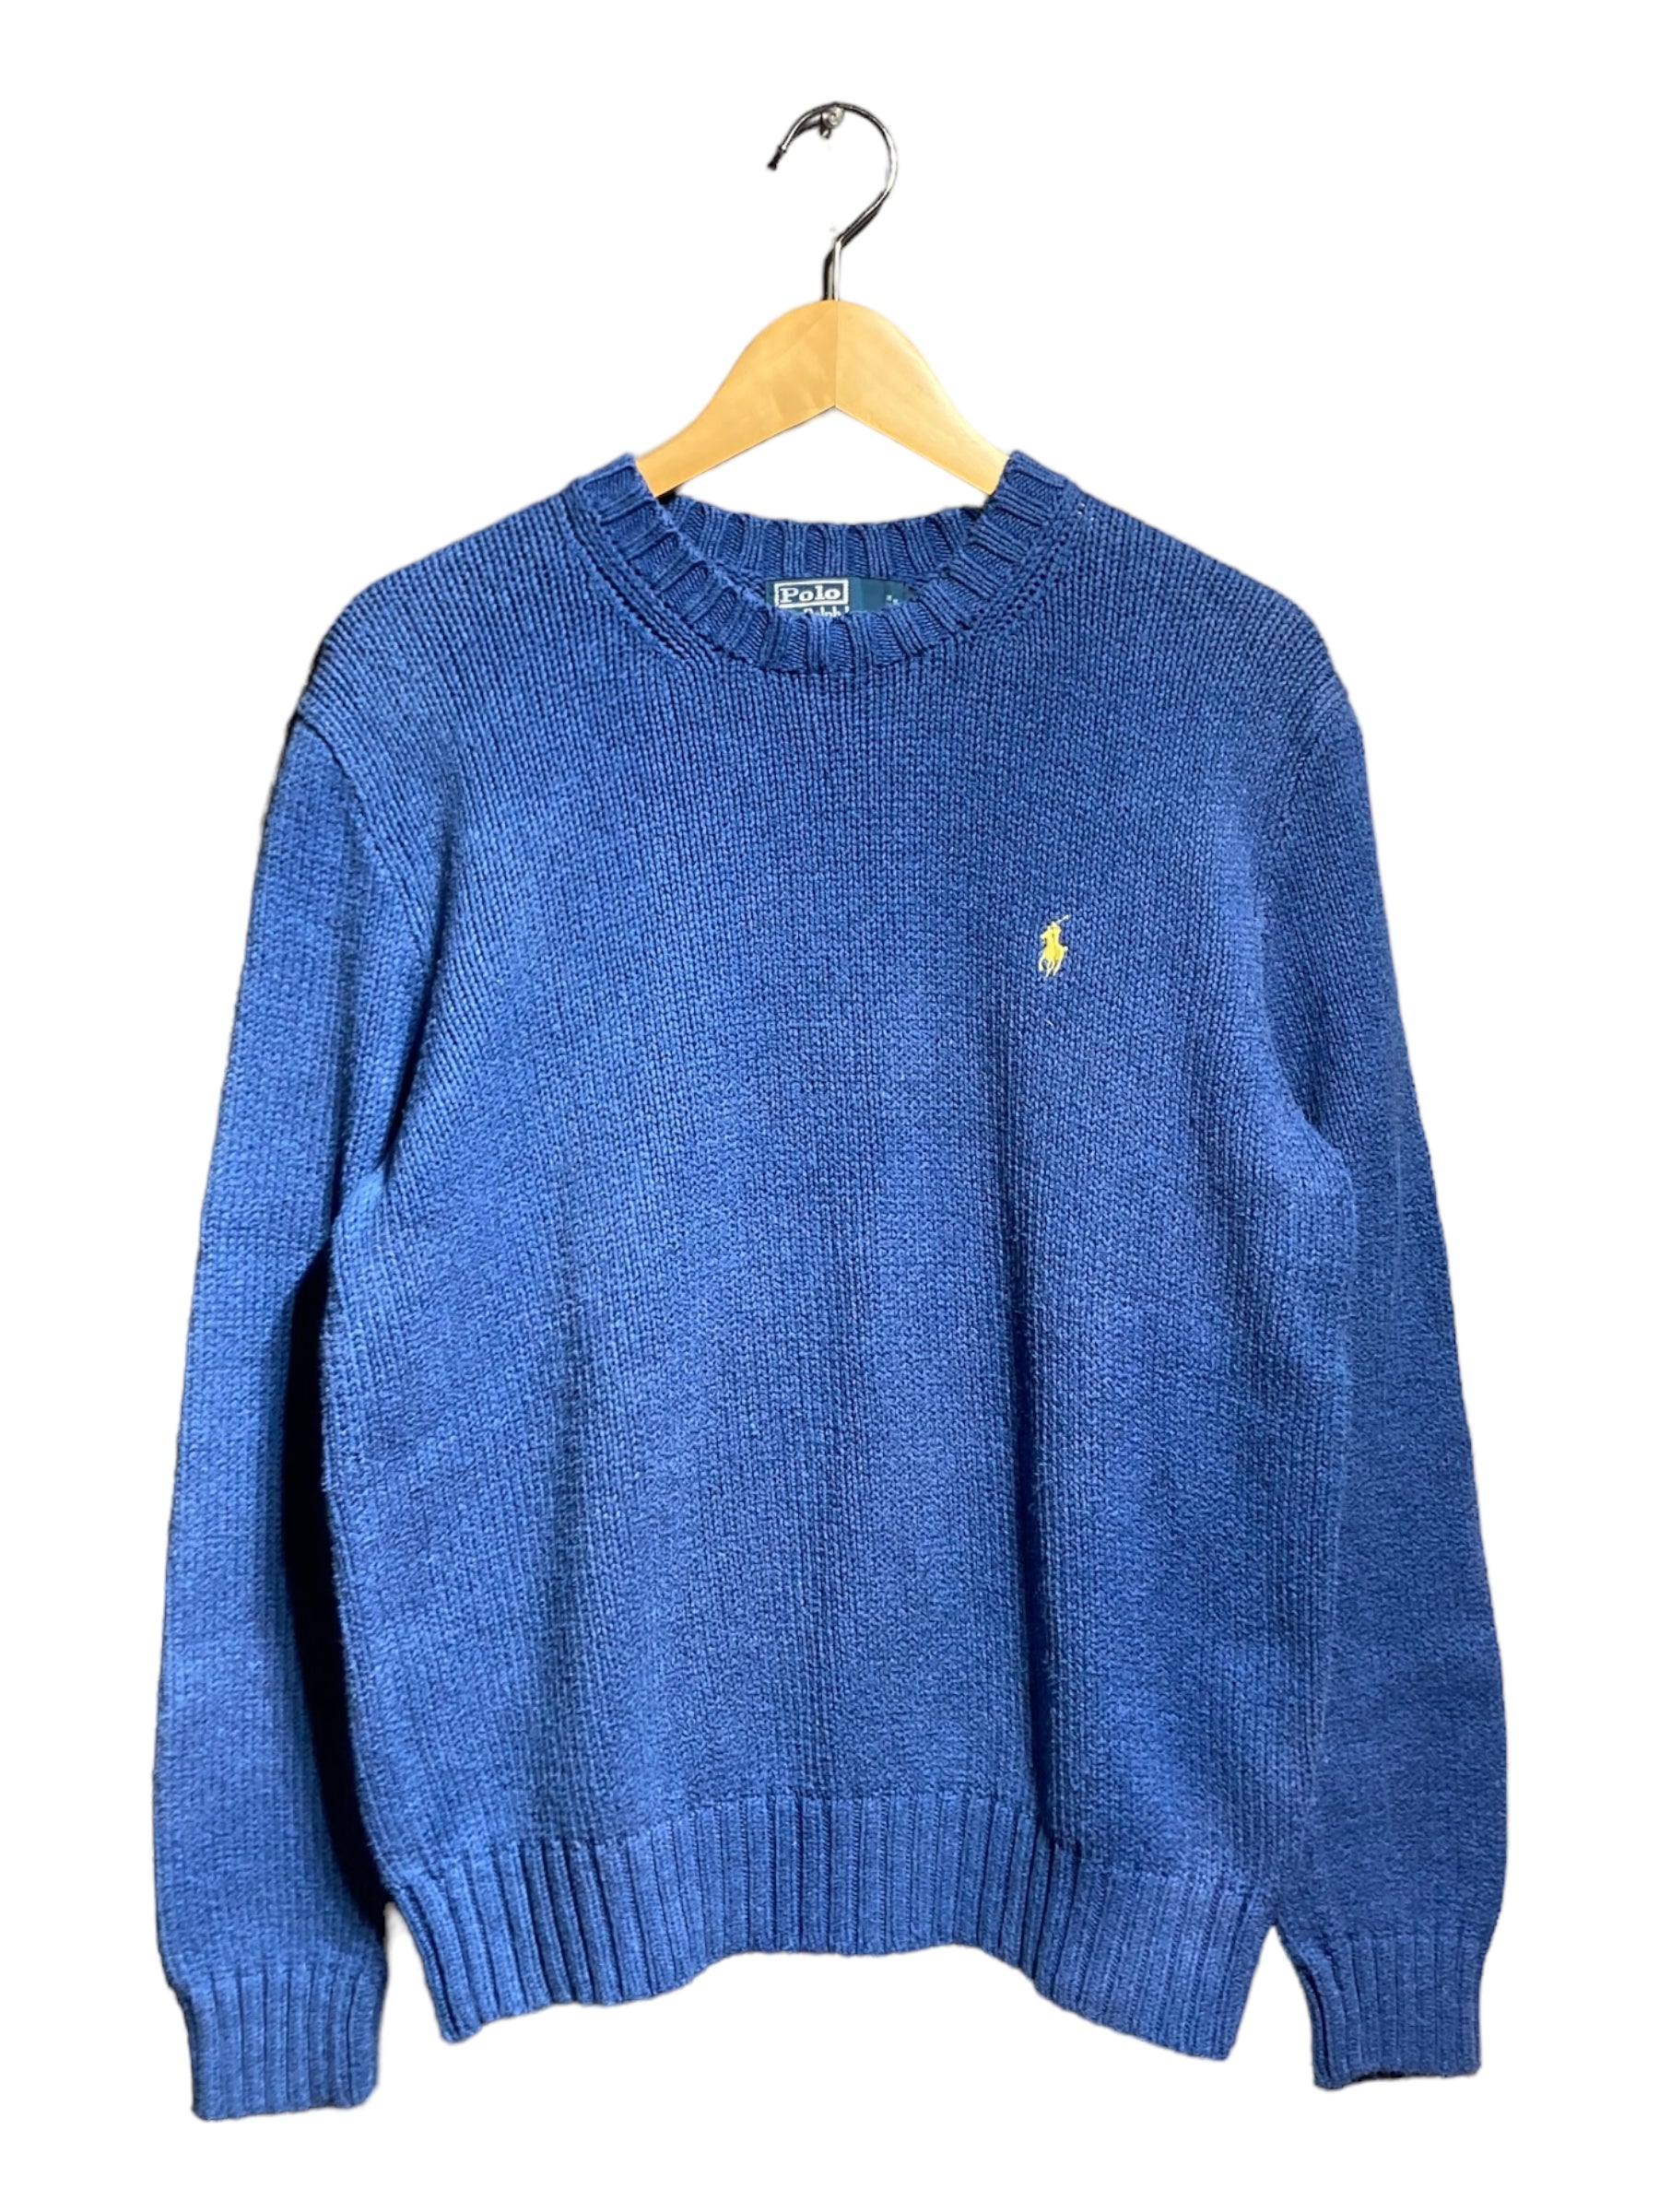 90s POLO RALPH LAUREN ポロ ラルフローレン knit sweater ニット